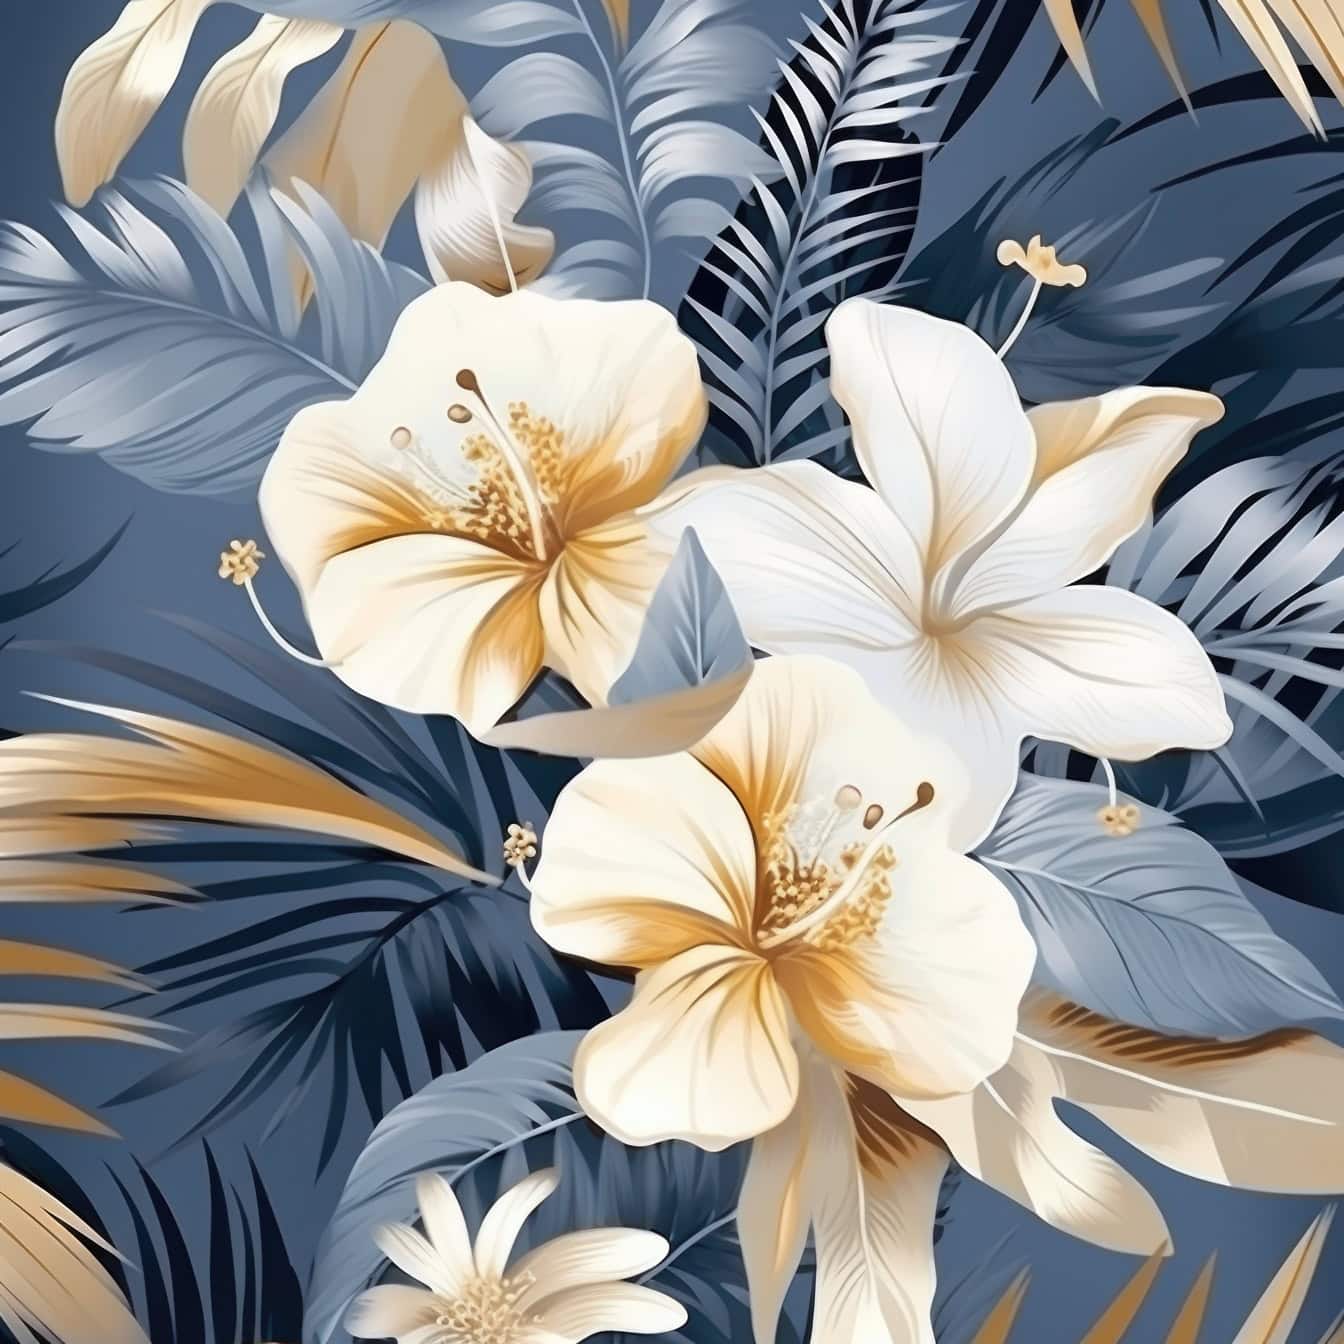 Квіткова графічна ілюстрація квітів і листя в пастельних, блакитних і жовтуватих тонах